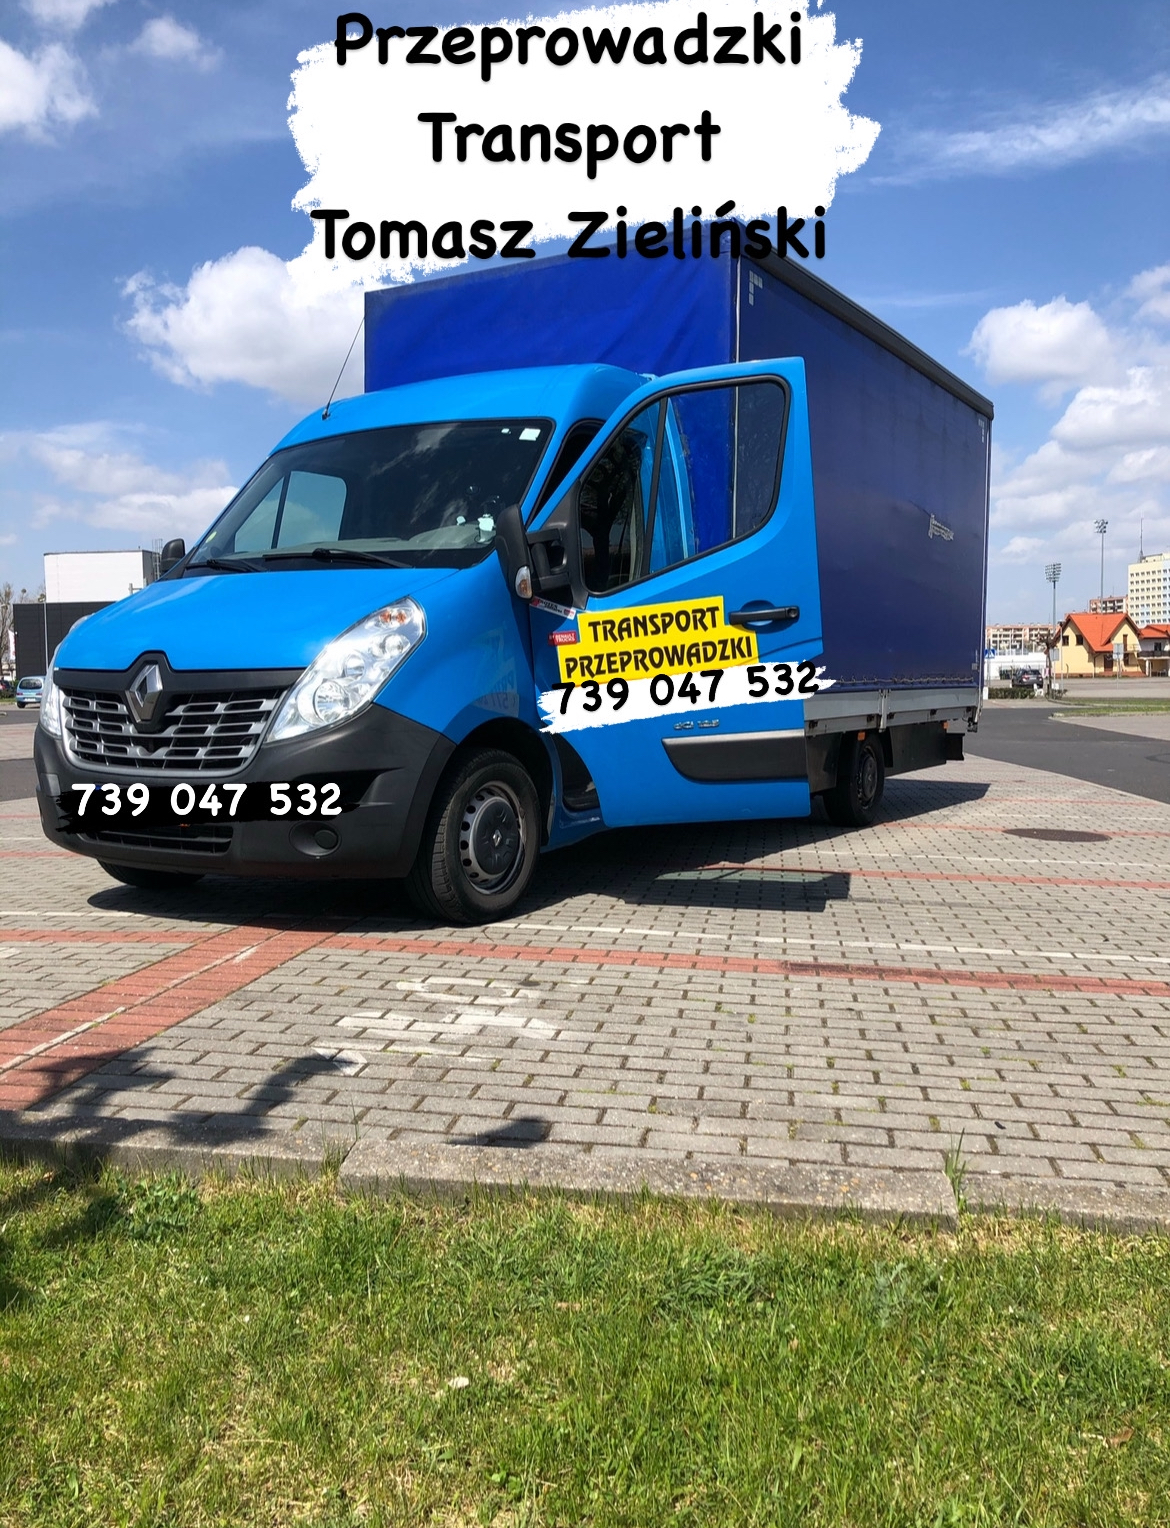 Przeprowadzki Transport Tomasz Zieliński 